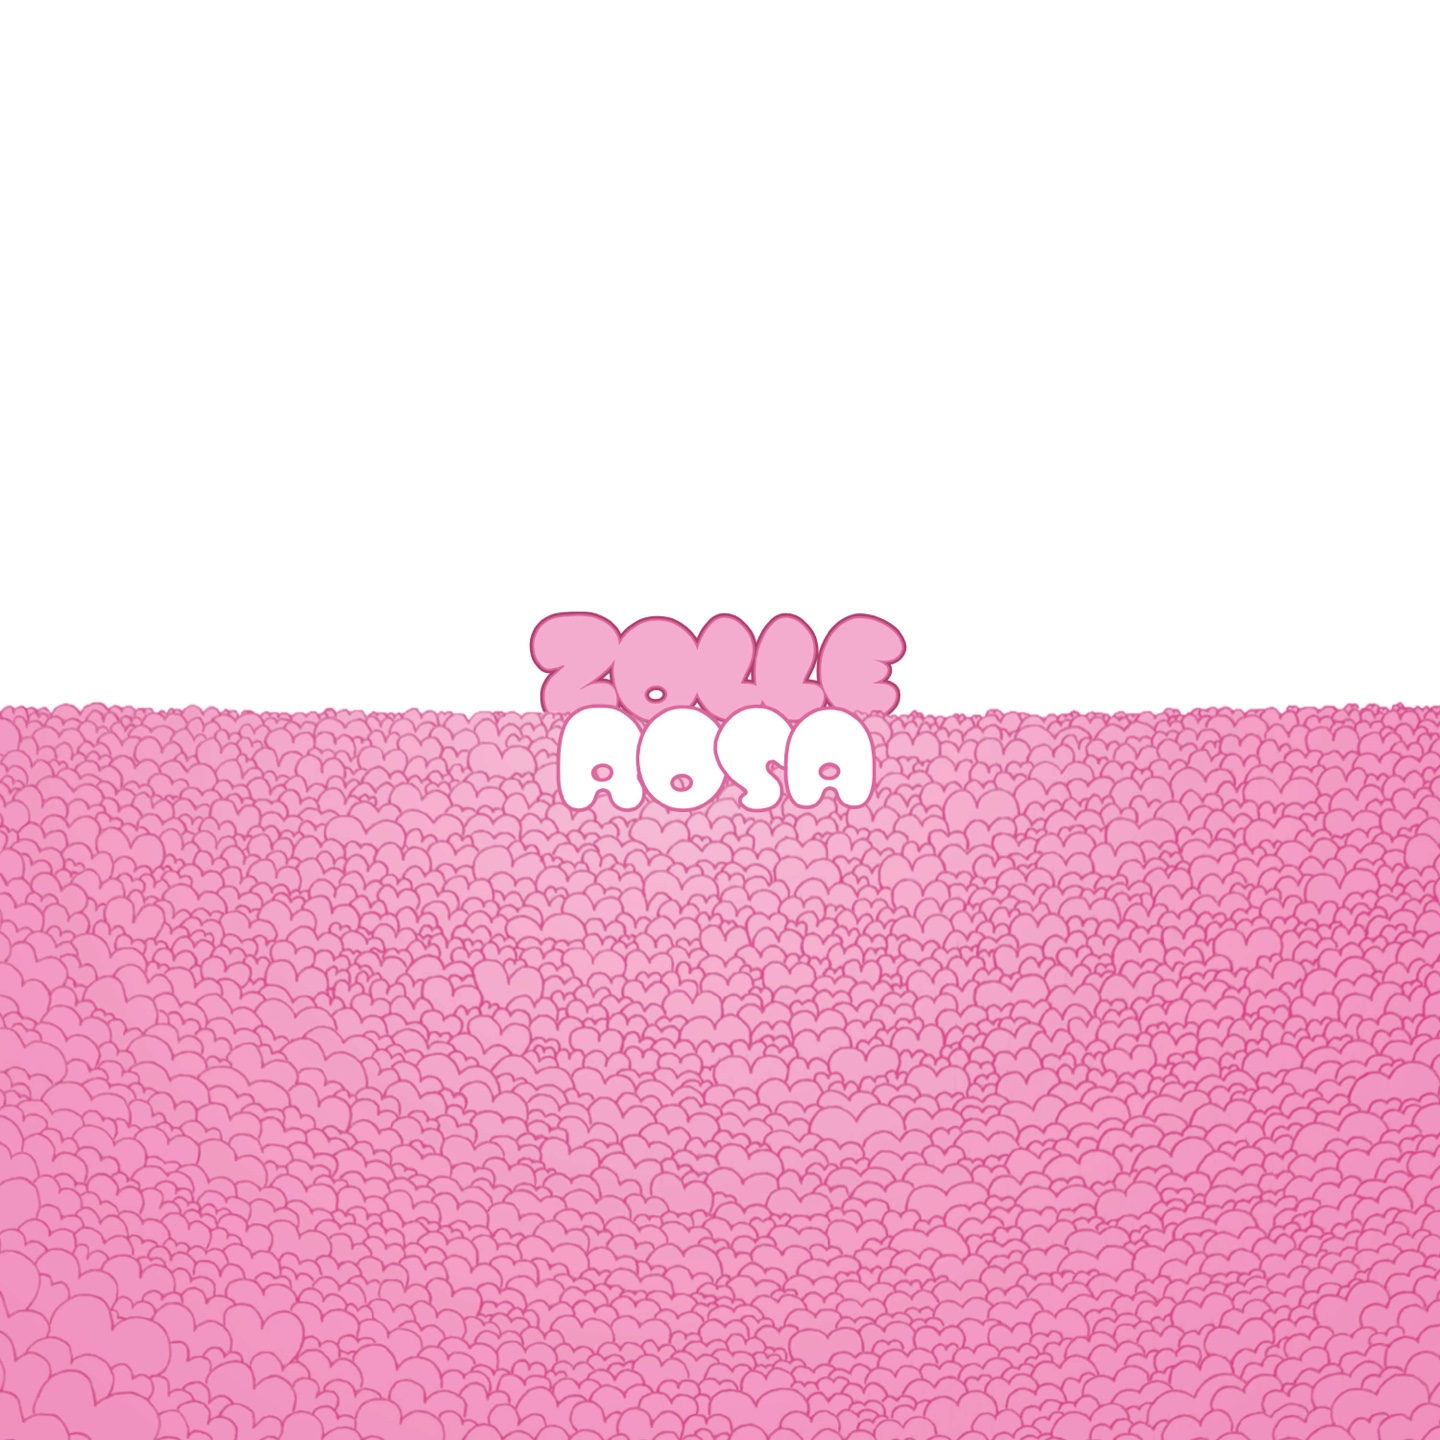 ZOLLE: new album “Rosa” streaming in full now!